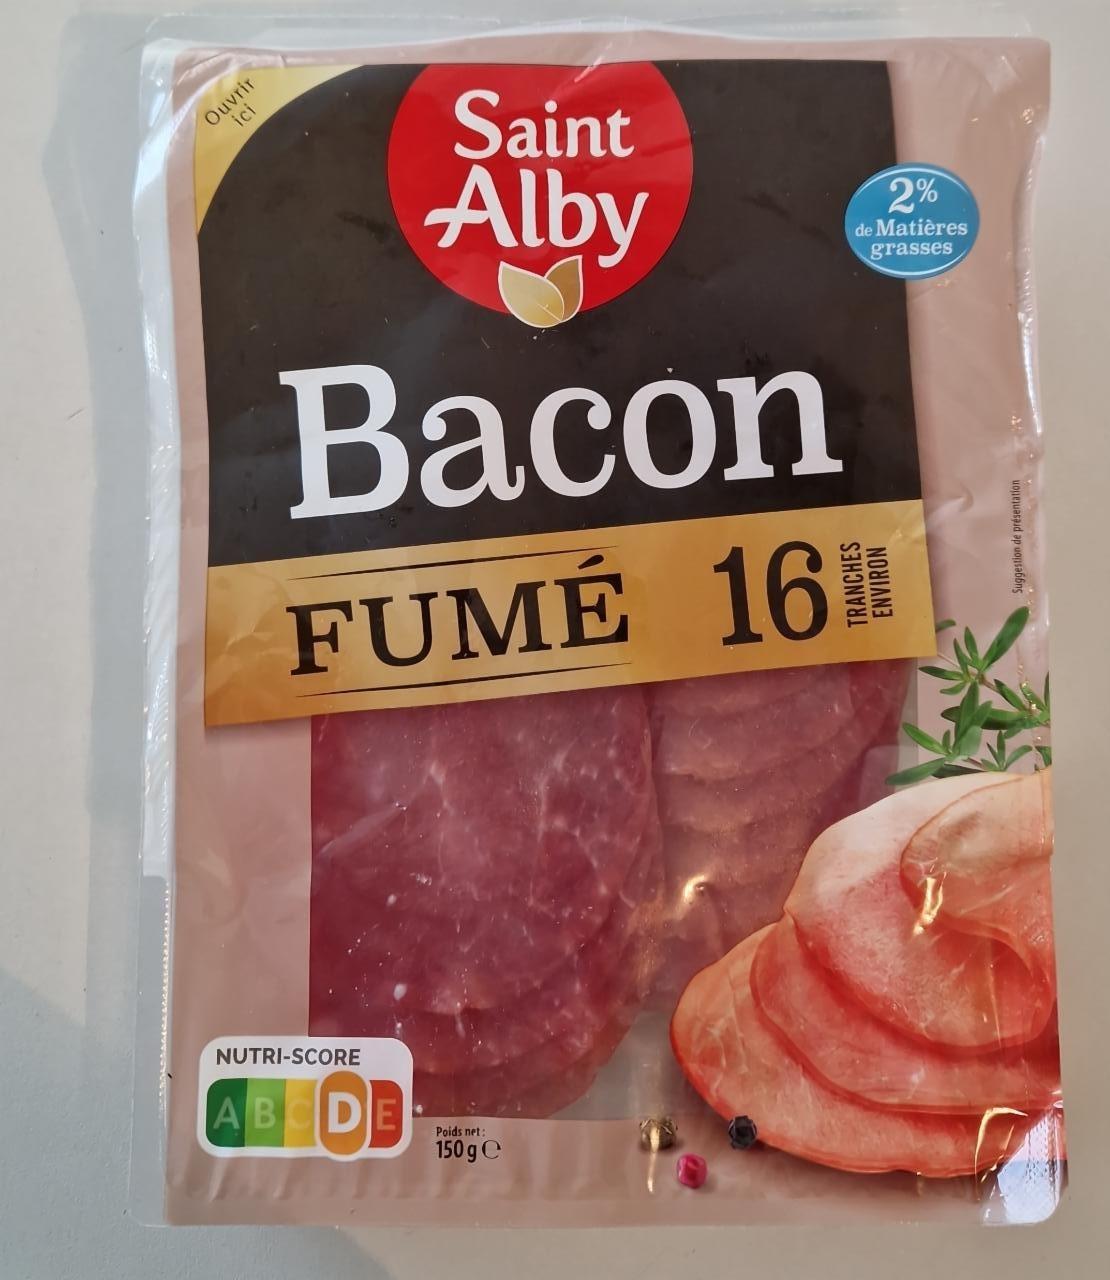 Fotografie - Bacon fumé Saint Alby